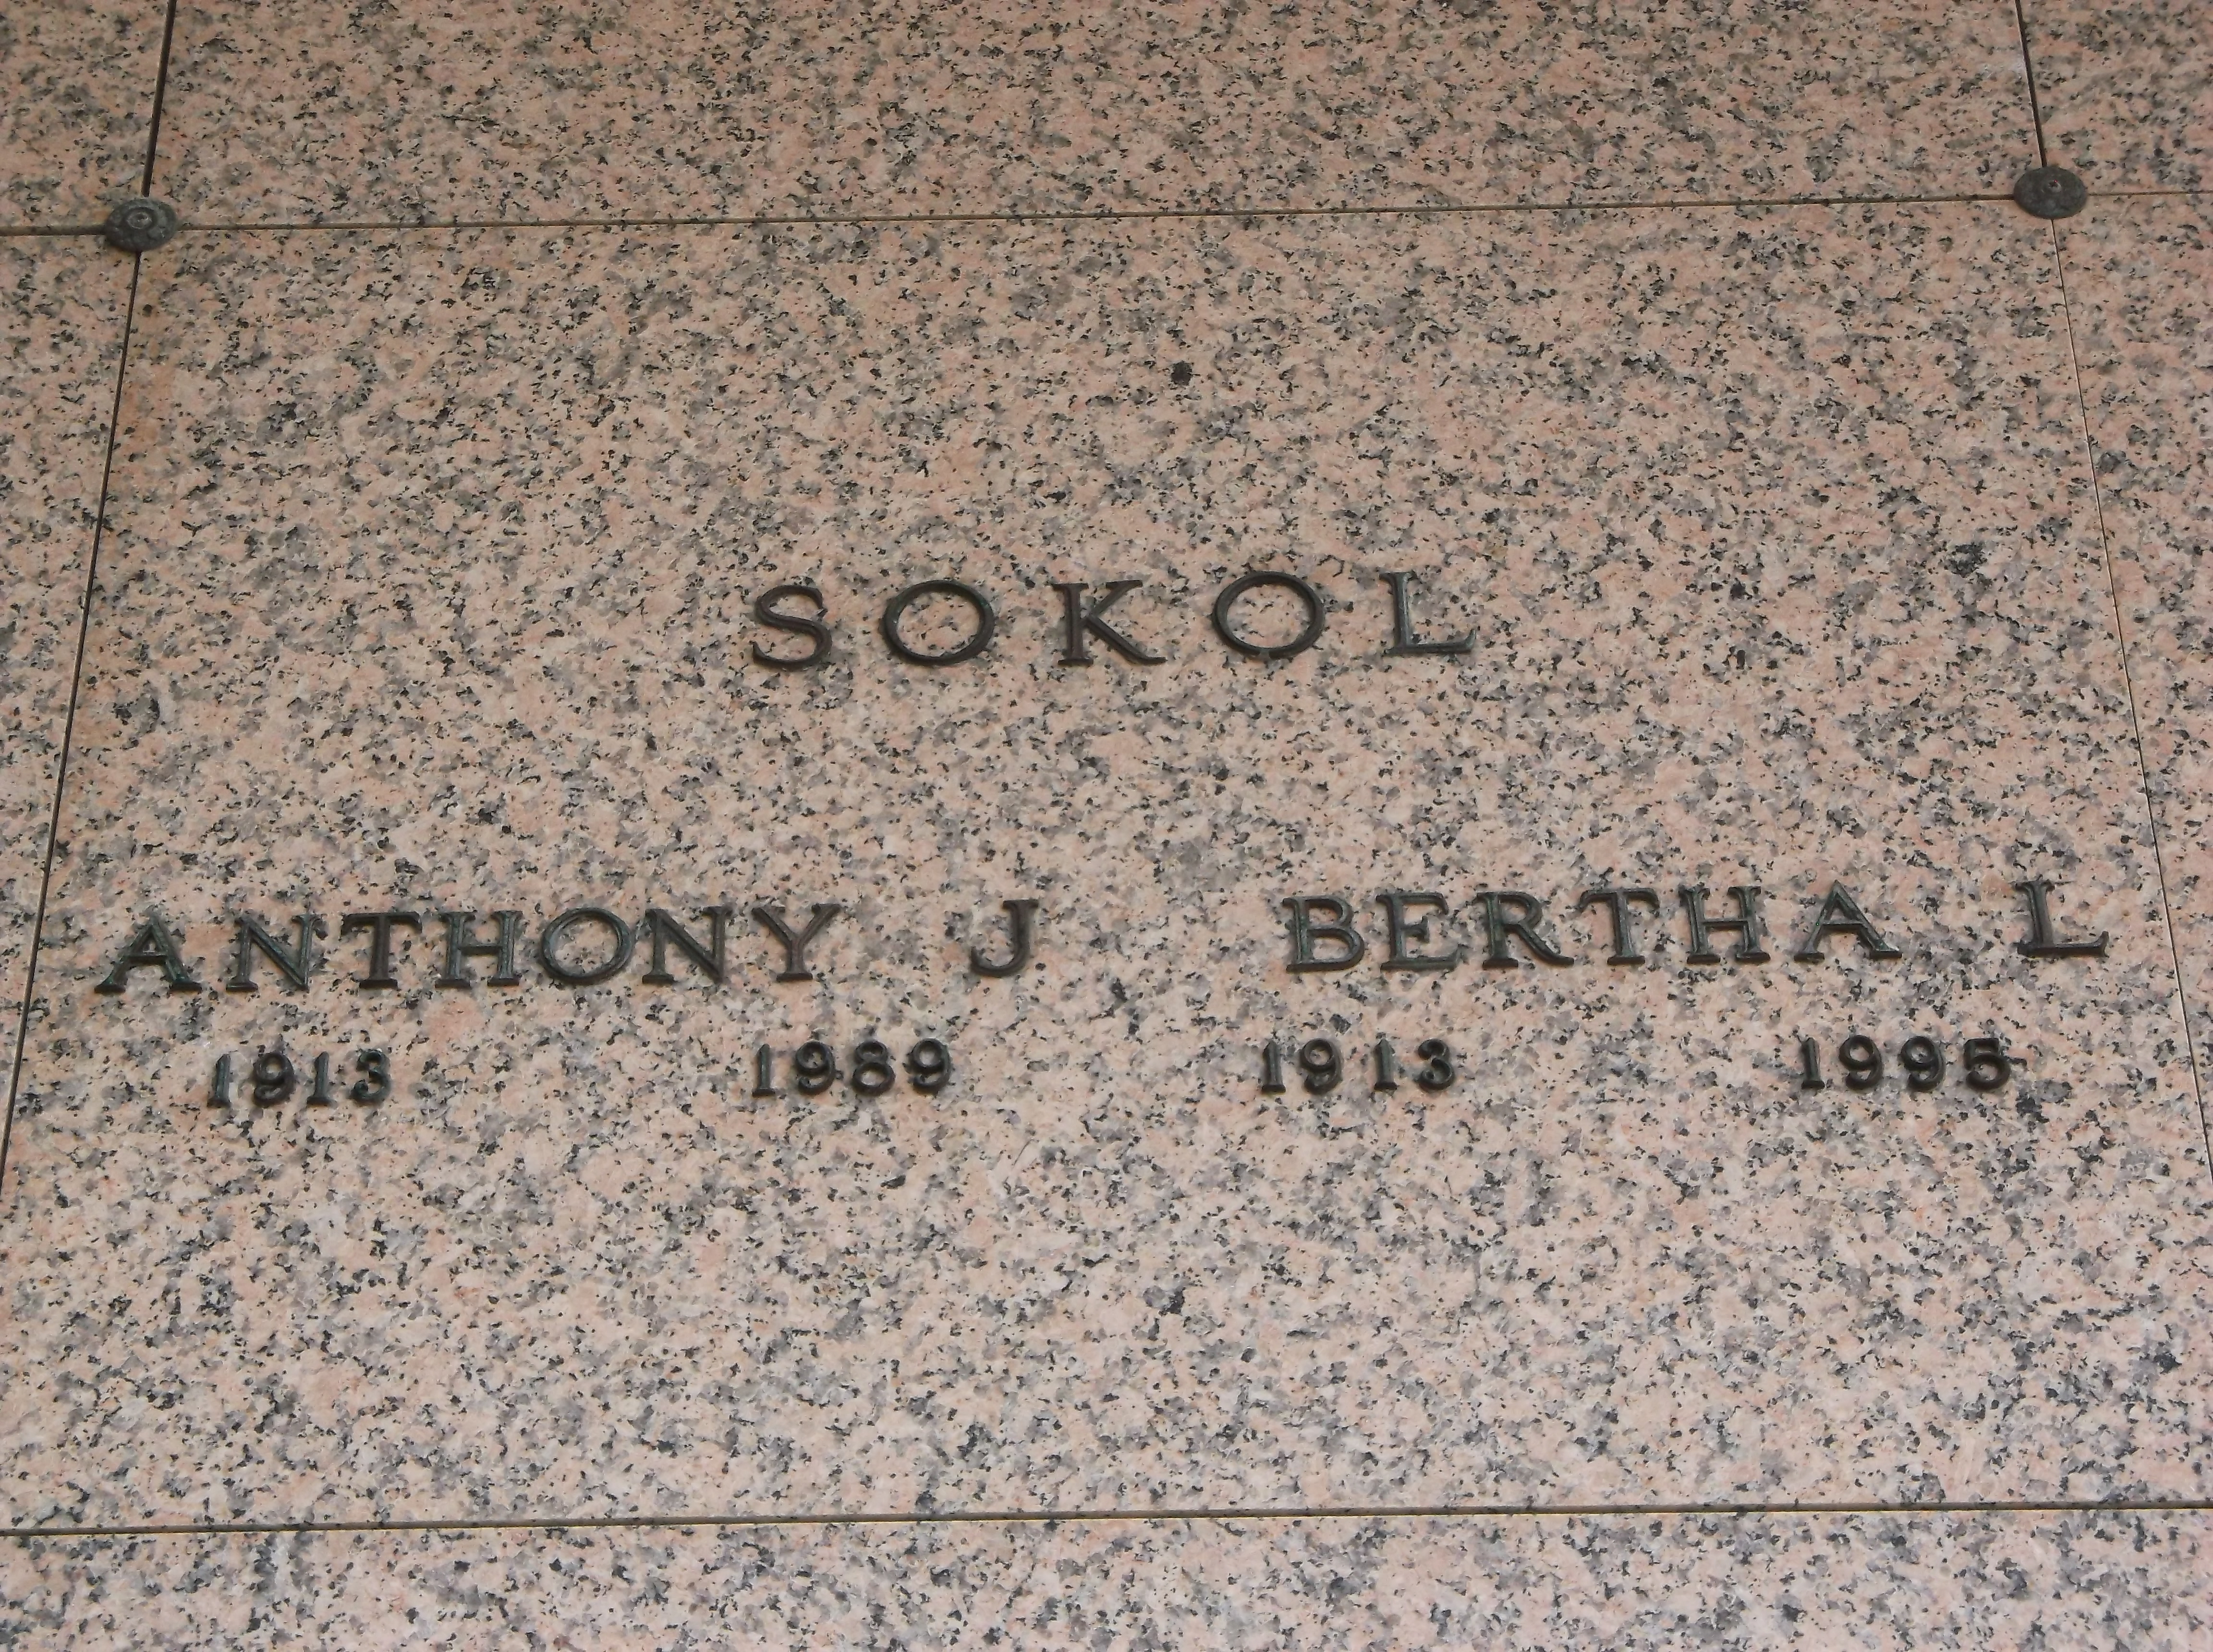 Bertha L Sokol